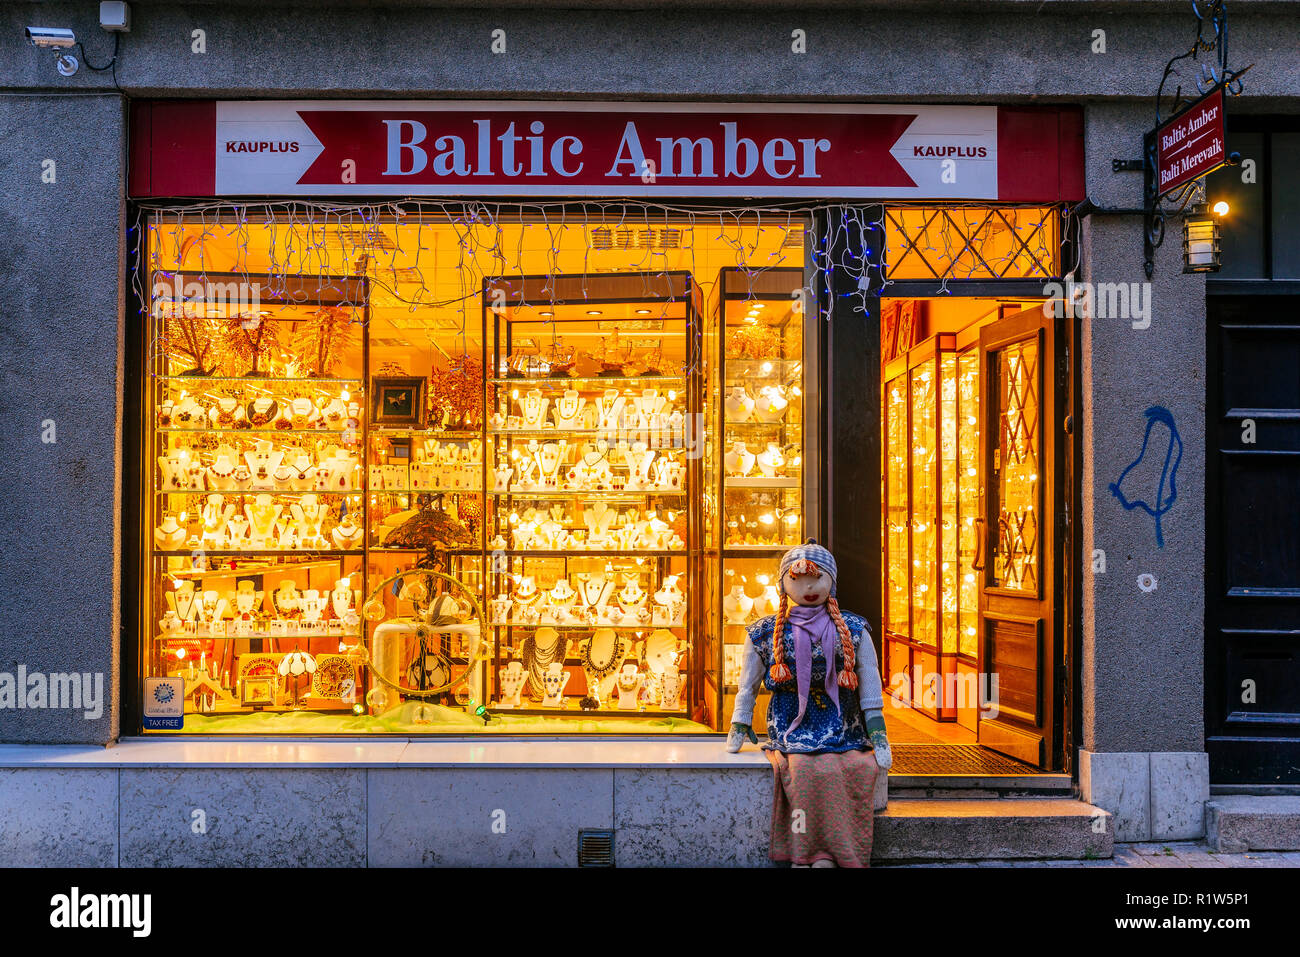 L'ambre de la Baltique. Boutique de souvenirs. Tallinn, Tartu, Estonie, de comté des États baltes, l'Europe. Banque D'Images